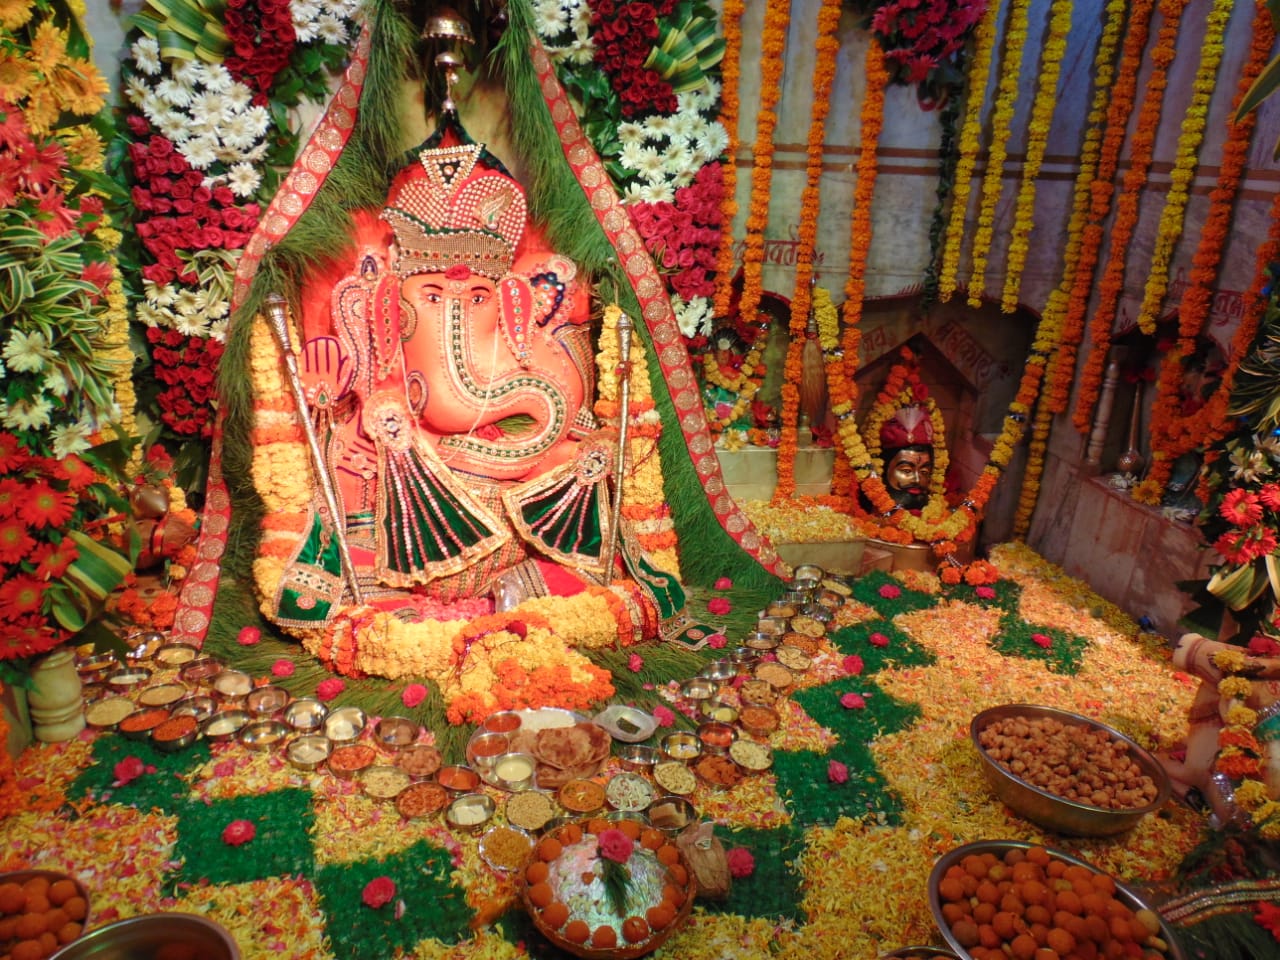 श्री श्री रणथंभौर गणेश मंदिर में 11 दिवसीय गणेशोत्सव का हुआ समापन | New India Times